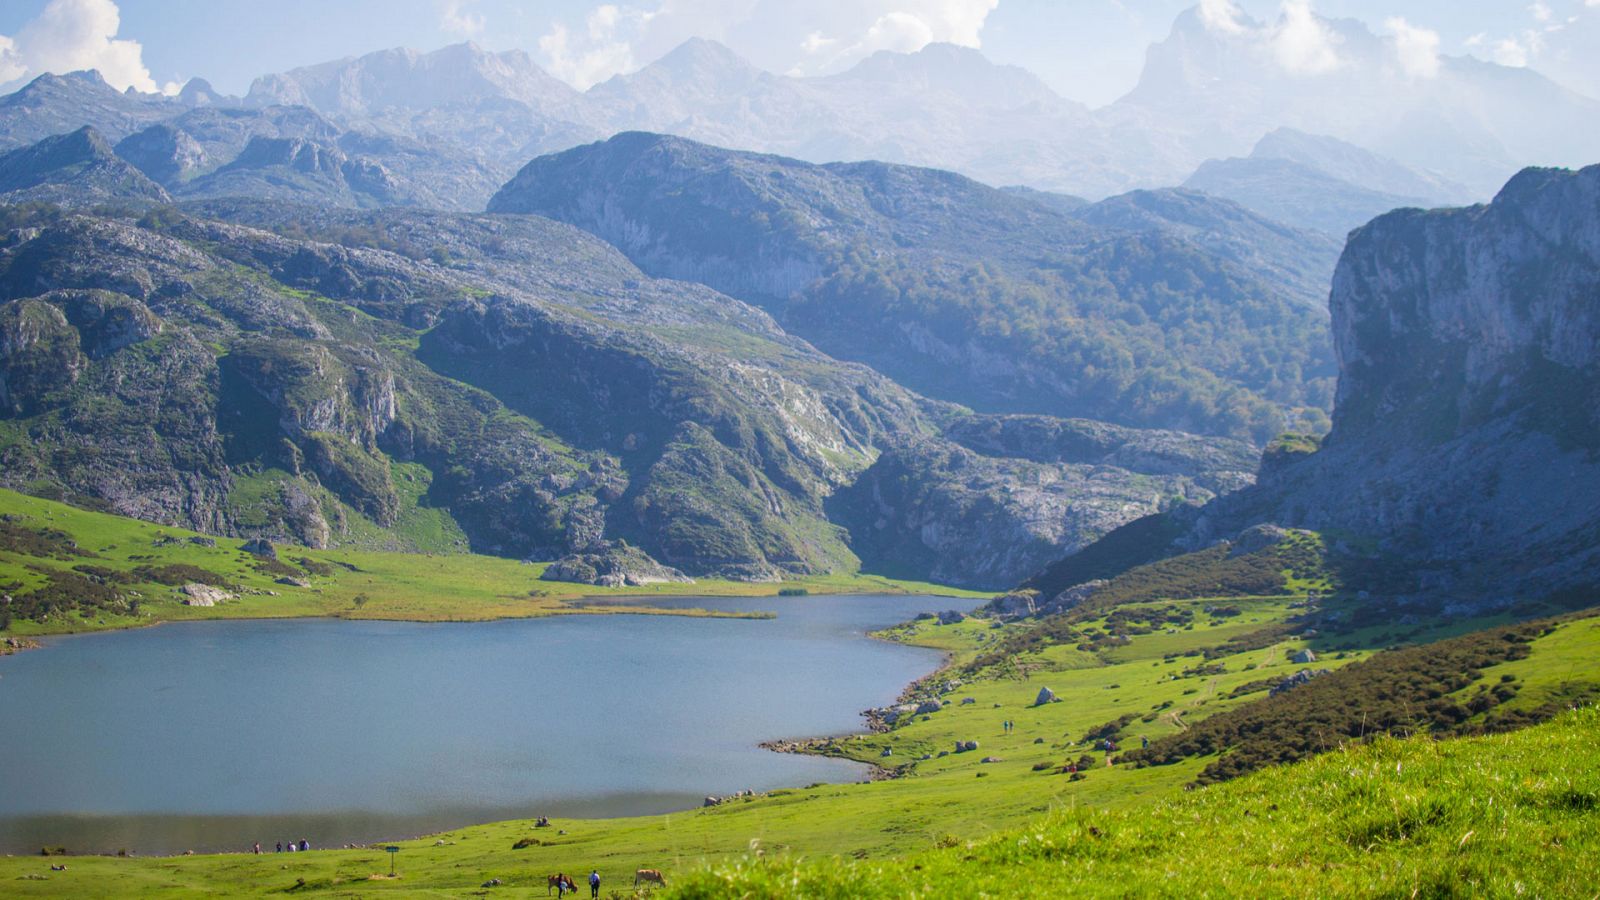 Turismo rural en el mundo - Asturias, la magia de la madre tierra - Documental en RTVE